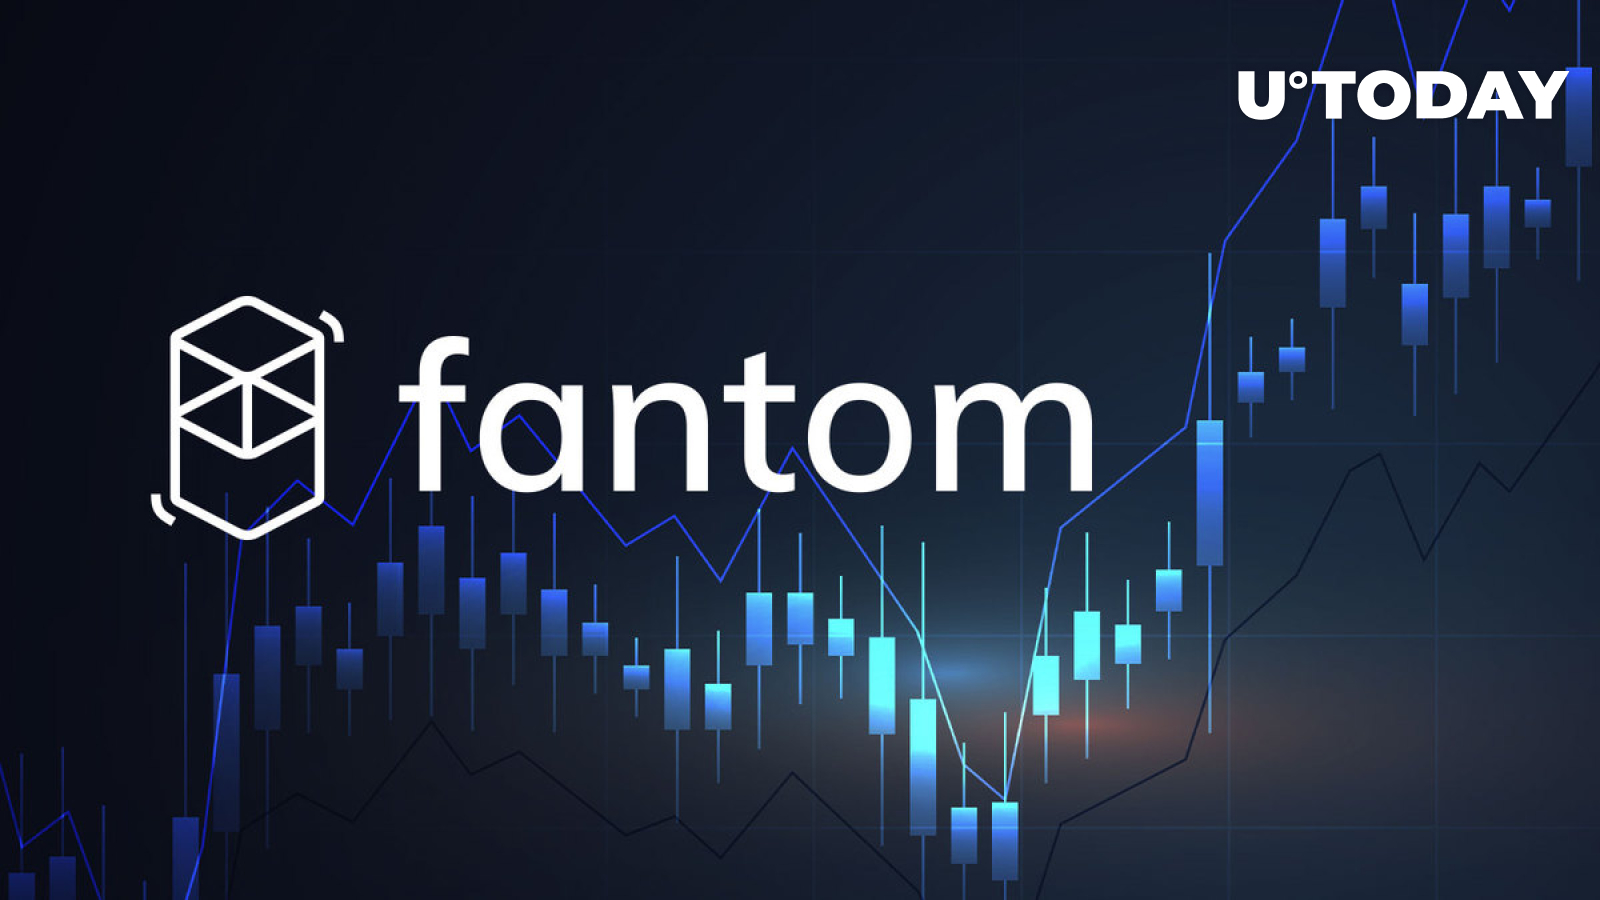 فانتوم با 2108 درصد افزایش در یک سال به سریع ترین شبکه در حال رشد در بازار تبدیل شد